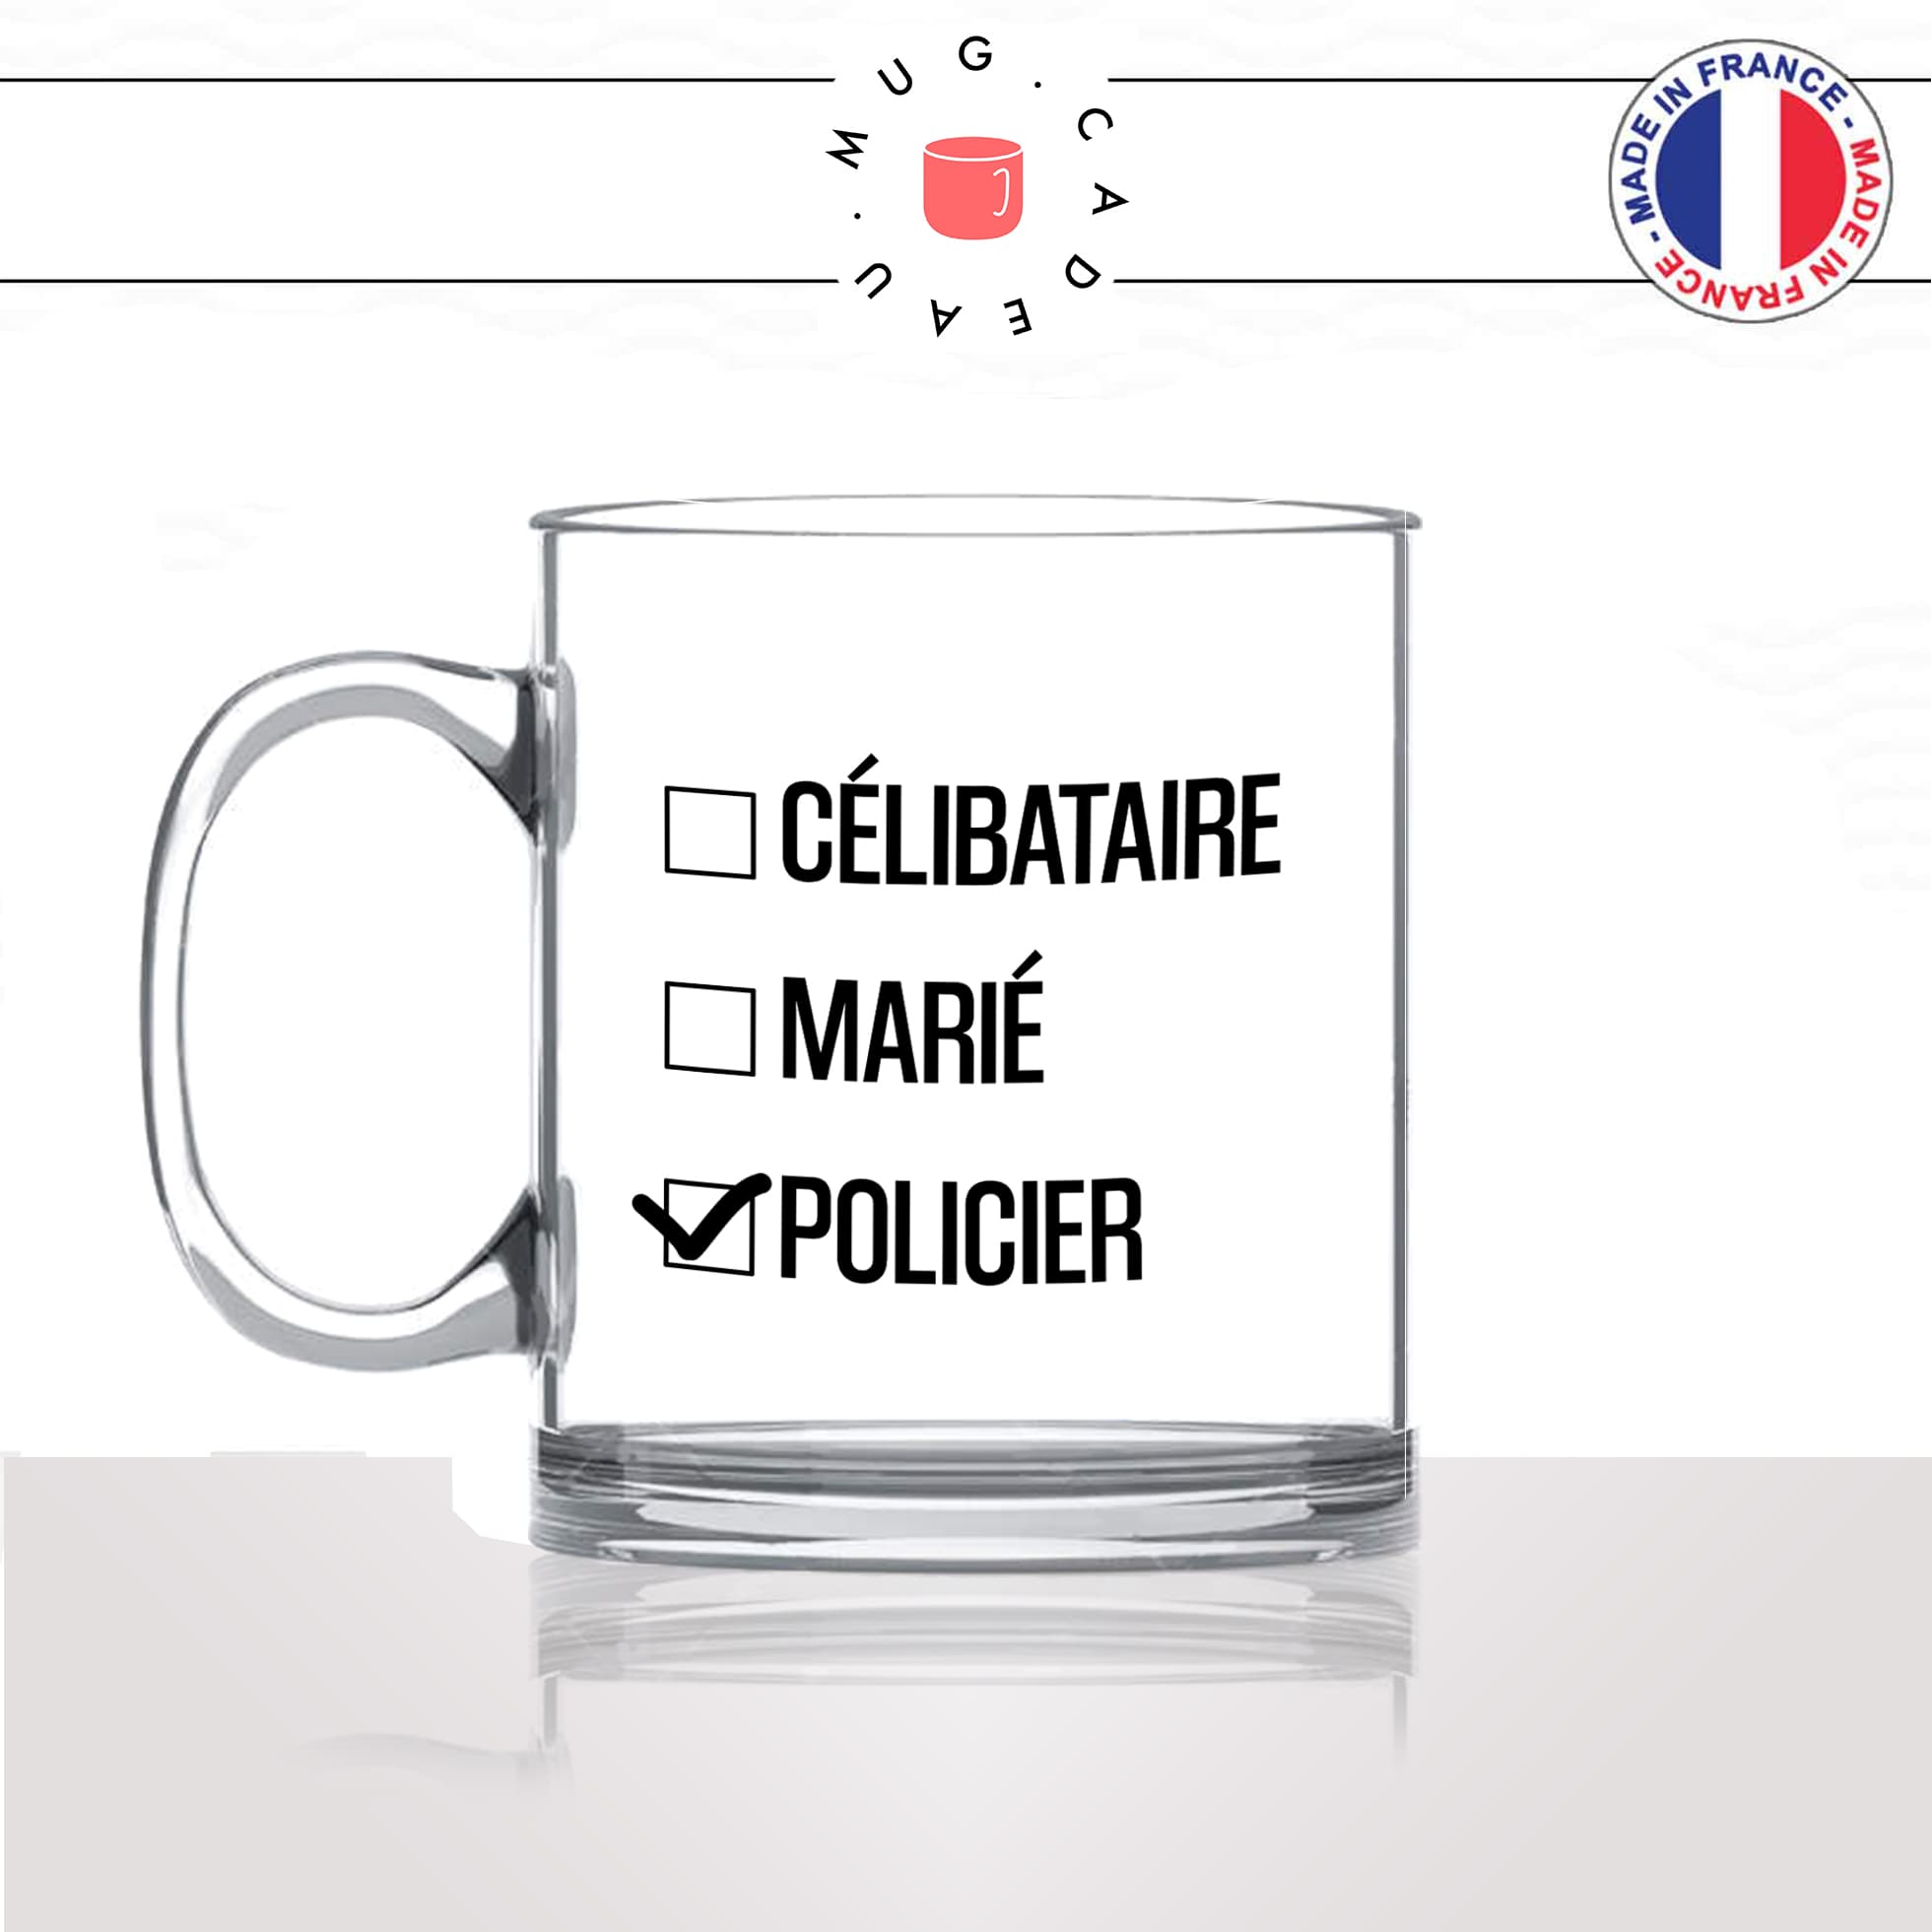 mug-tasse-en-verre-transparent-glass-celibataire-marié-policier-fonctionnaire-de-police-travail-métier-fun-cool-café-thé-idée-cadeau-original